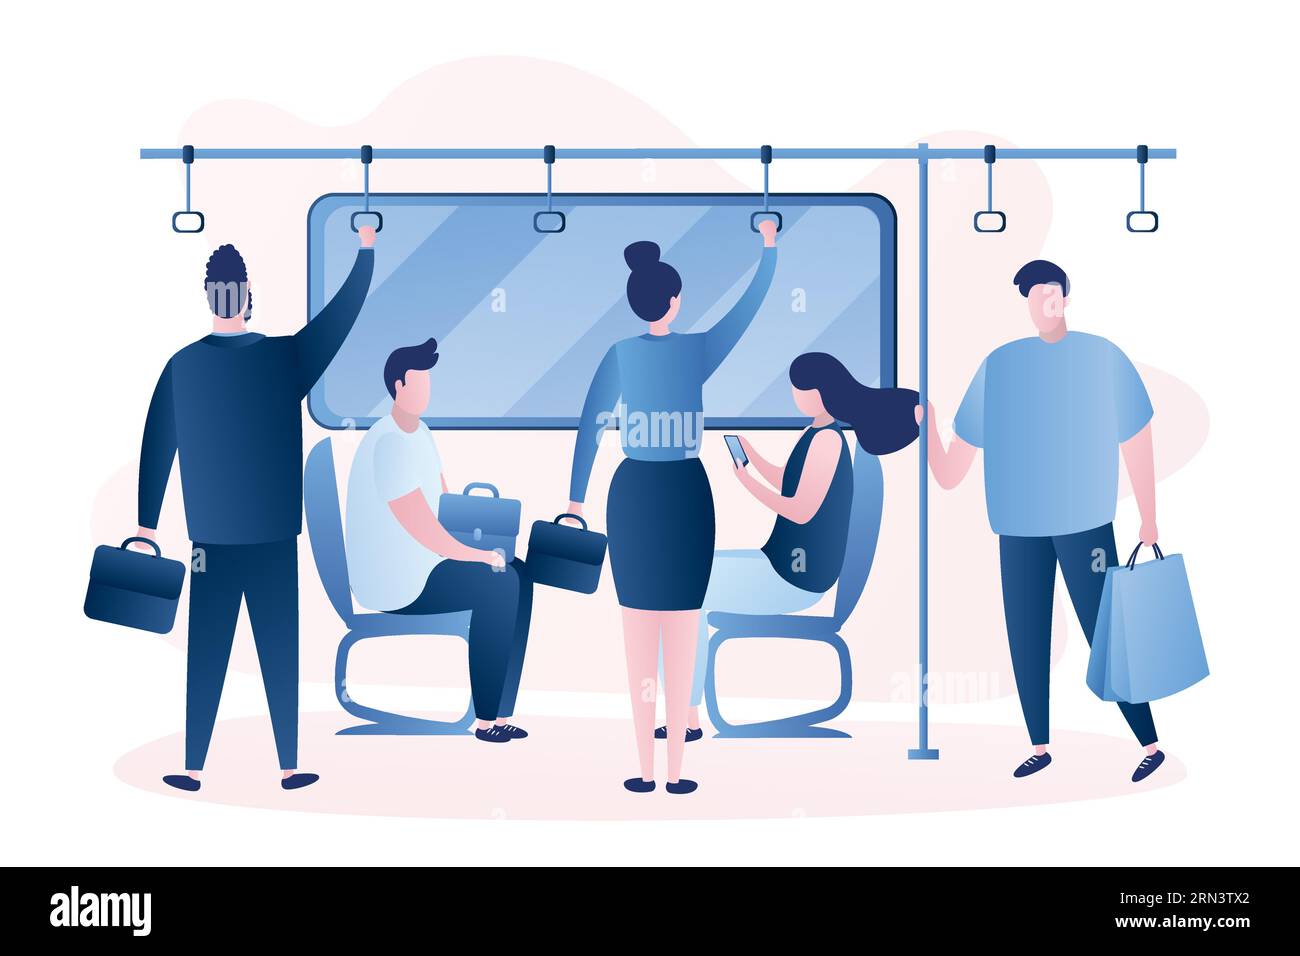 Menschen in der U-Bahn. Männliche und weibliche Charaktere in vatiosen Posen. Menschen, die in der Metro sitzen und stehen. Verschiedene Personen mit öffentlichen Verkehrsmitteln. Stock Vektor